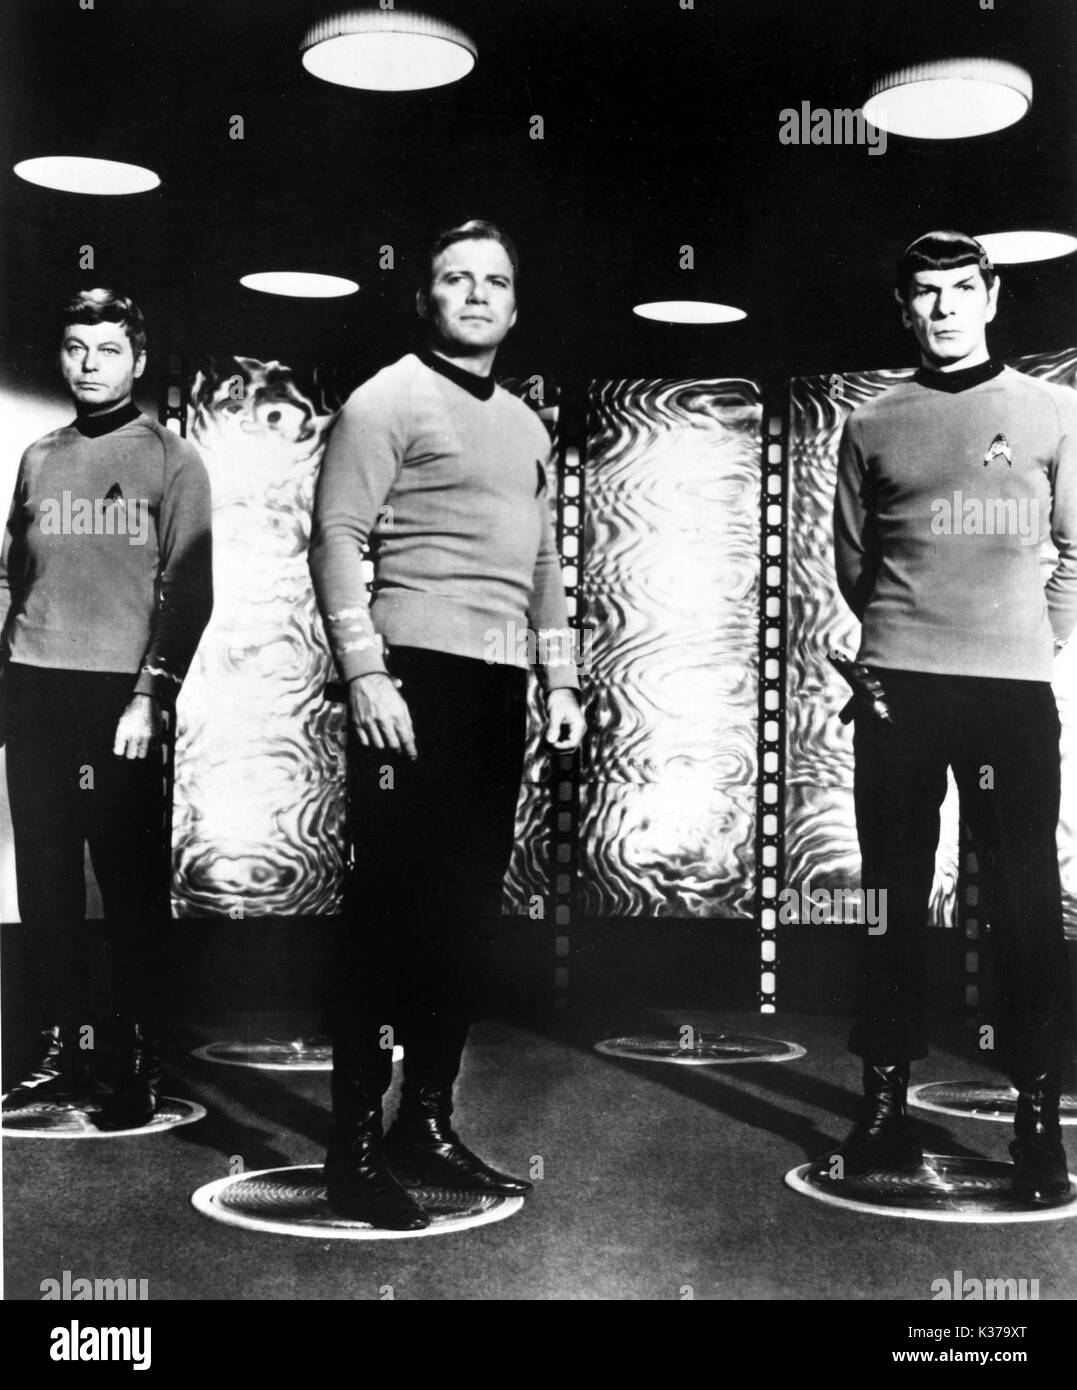 STAR TREK DEFOREST KELLY as Dr McCoy aka Bones, WILLIAM SHATNER as Captain James T Kirk, LEONARD NIMOY as Mr Spock STAR TREK Stock Photo